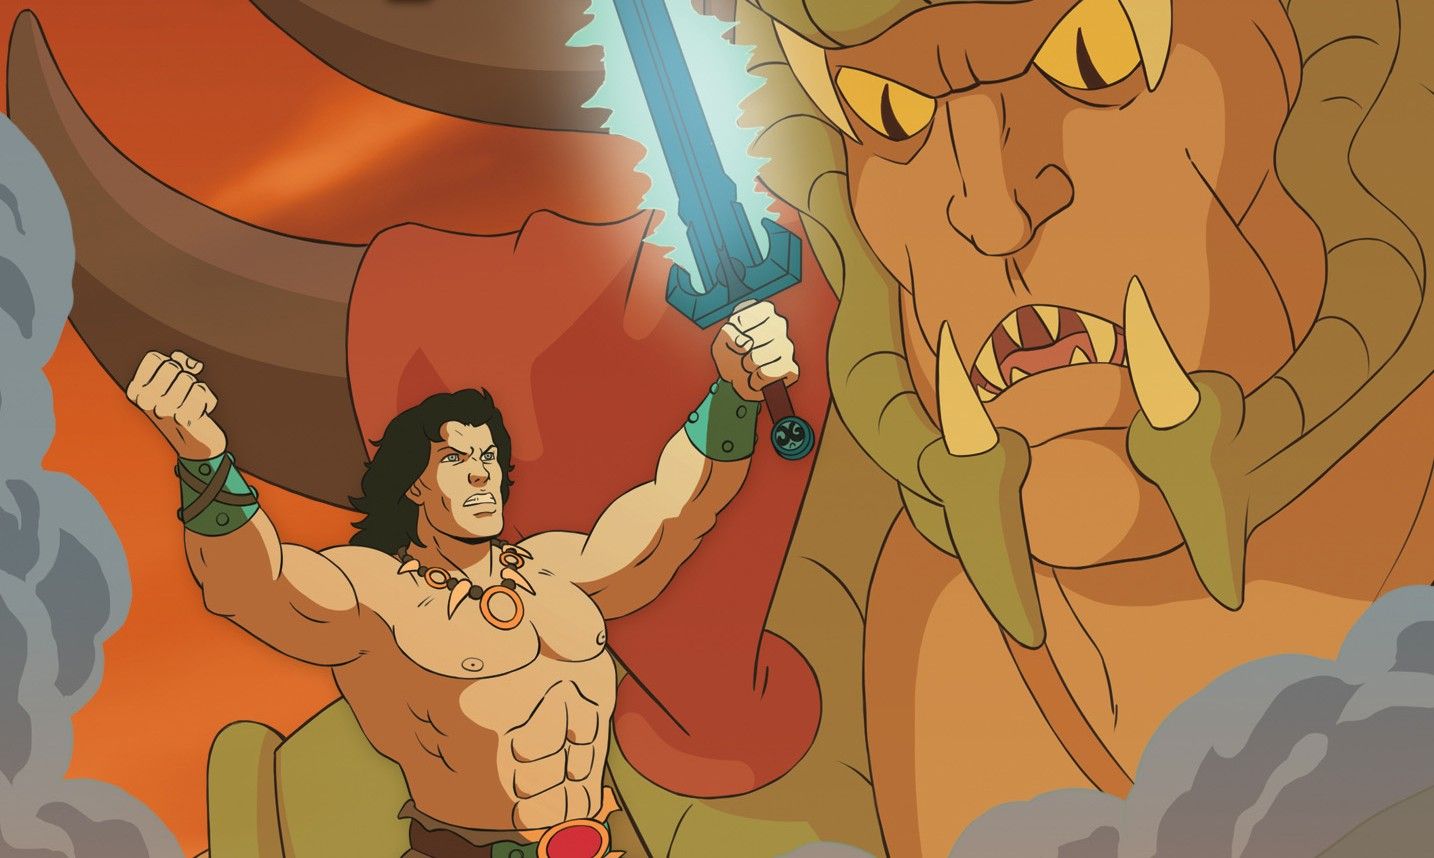 Conan facing Wrath-Amon